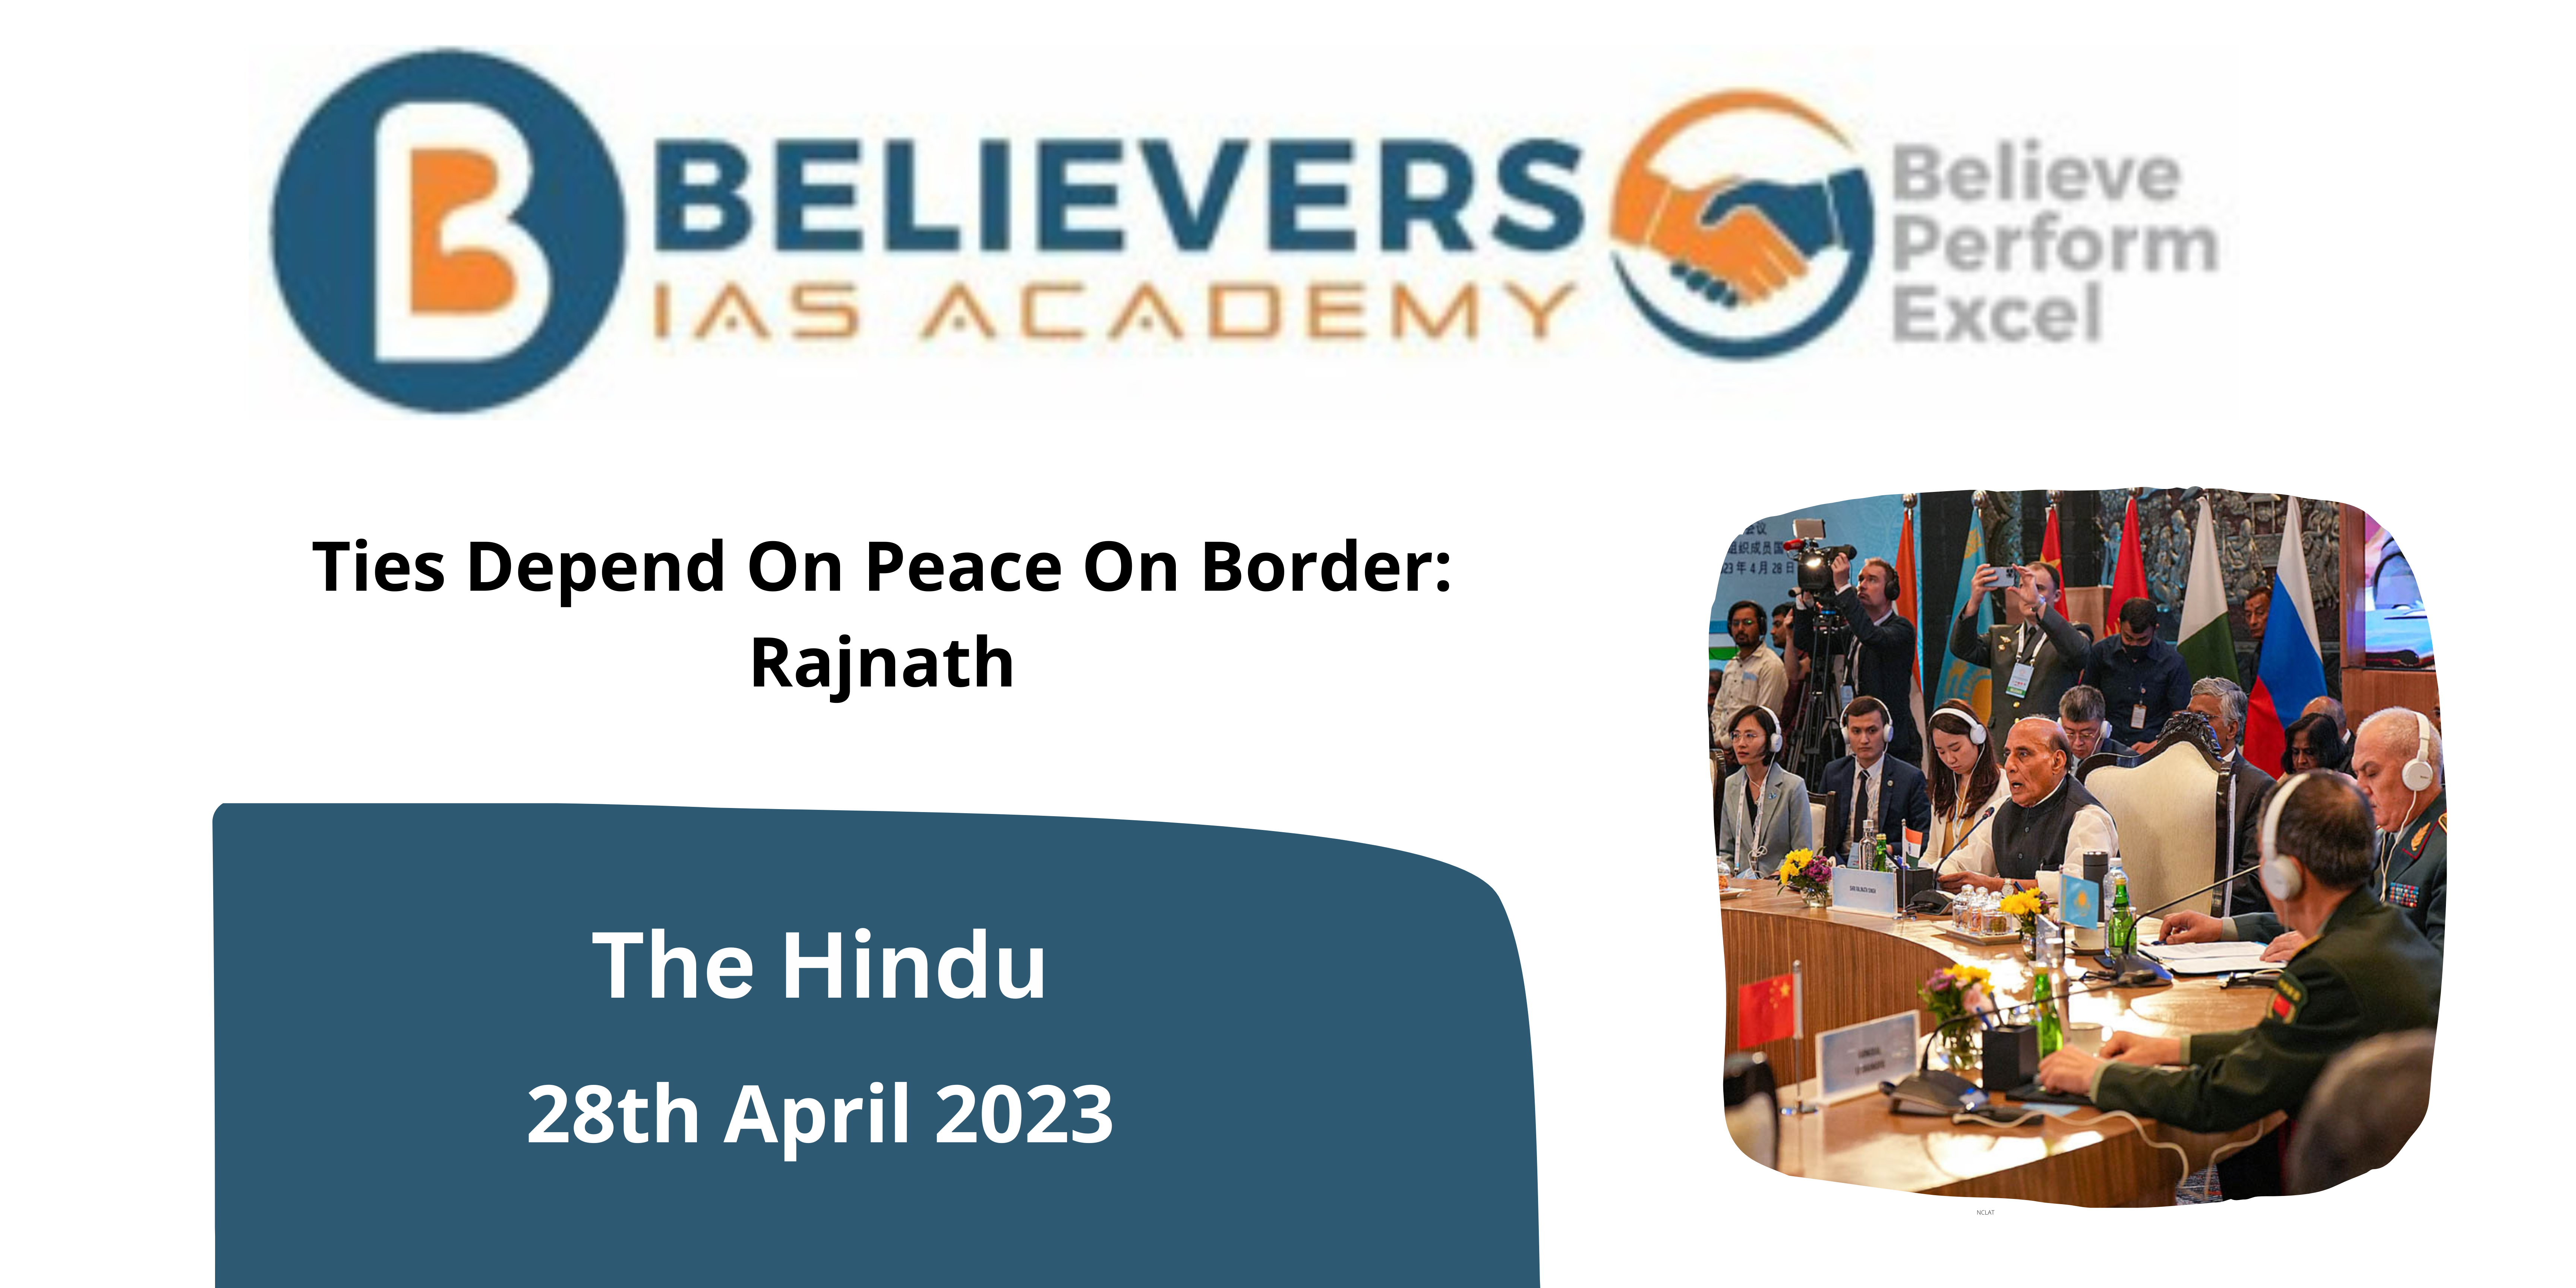 Ties Depend On Peace On Border: Rajnath